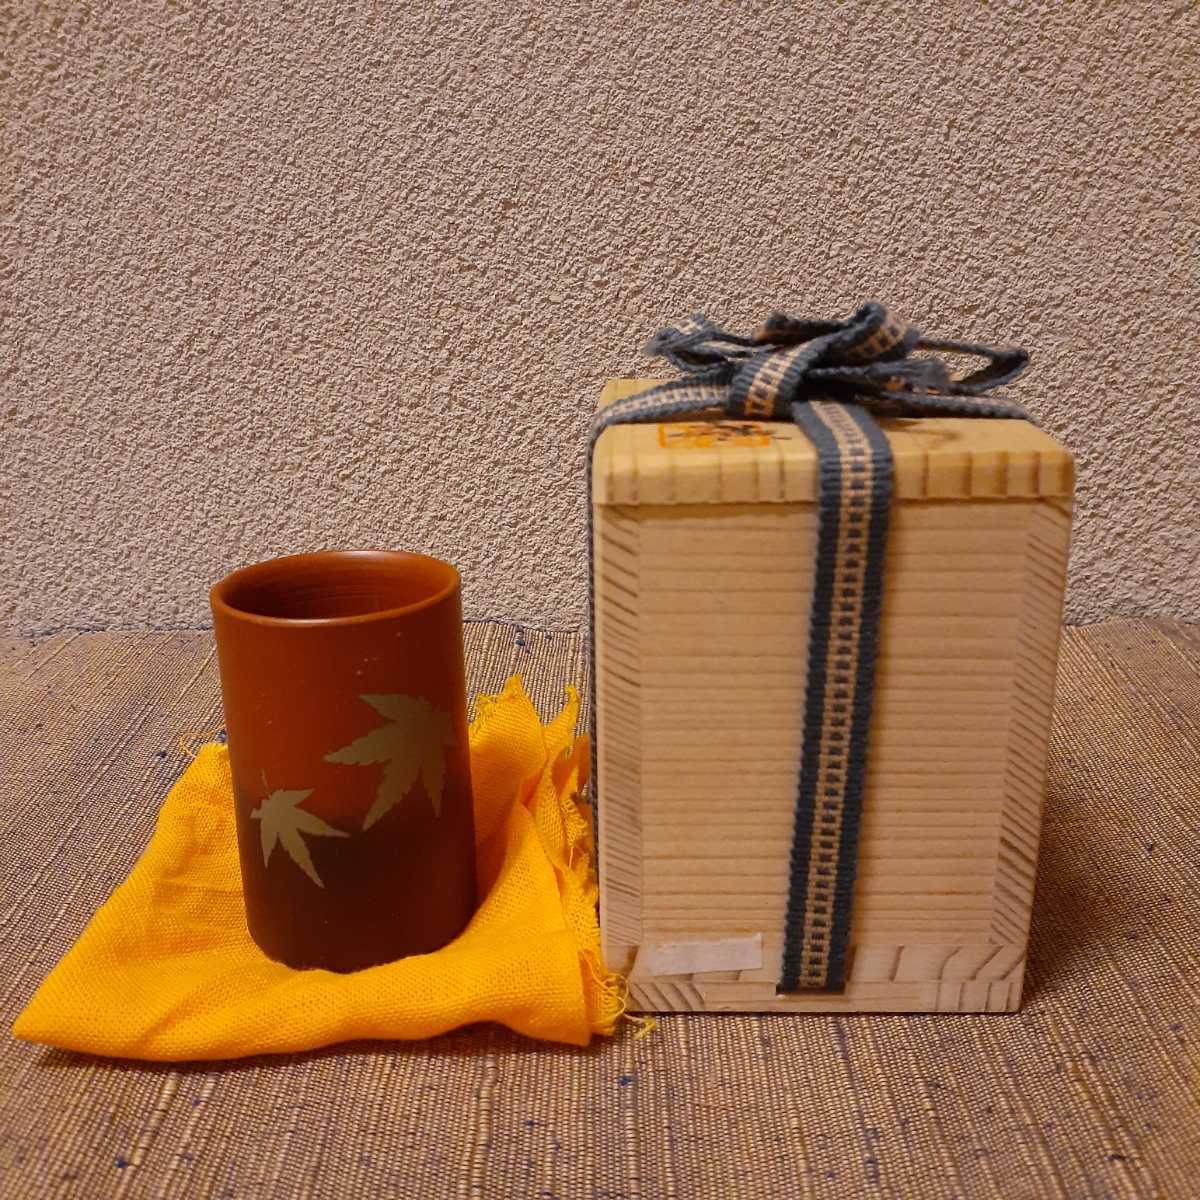  чай ширина тубус ширина тубус чай коробка для вместе коробка примерно 5.9cm×3.8cm